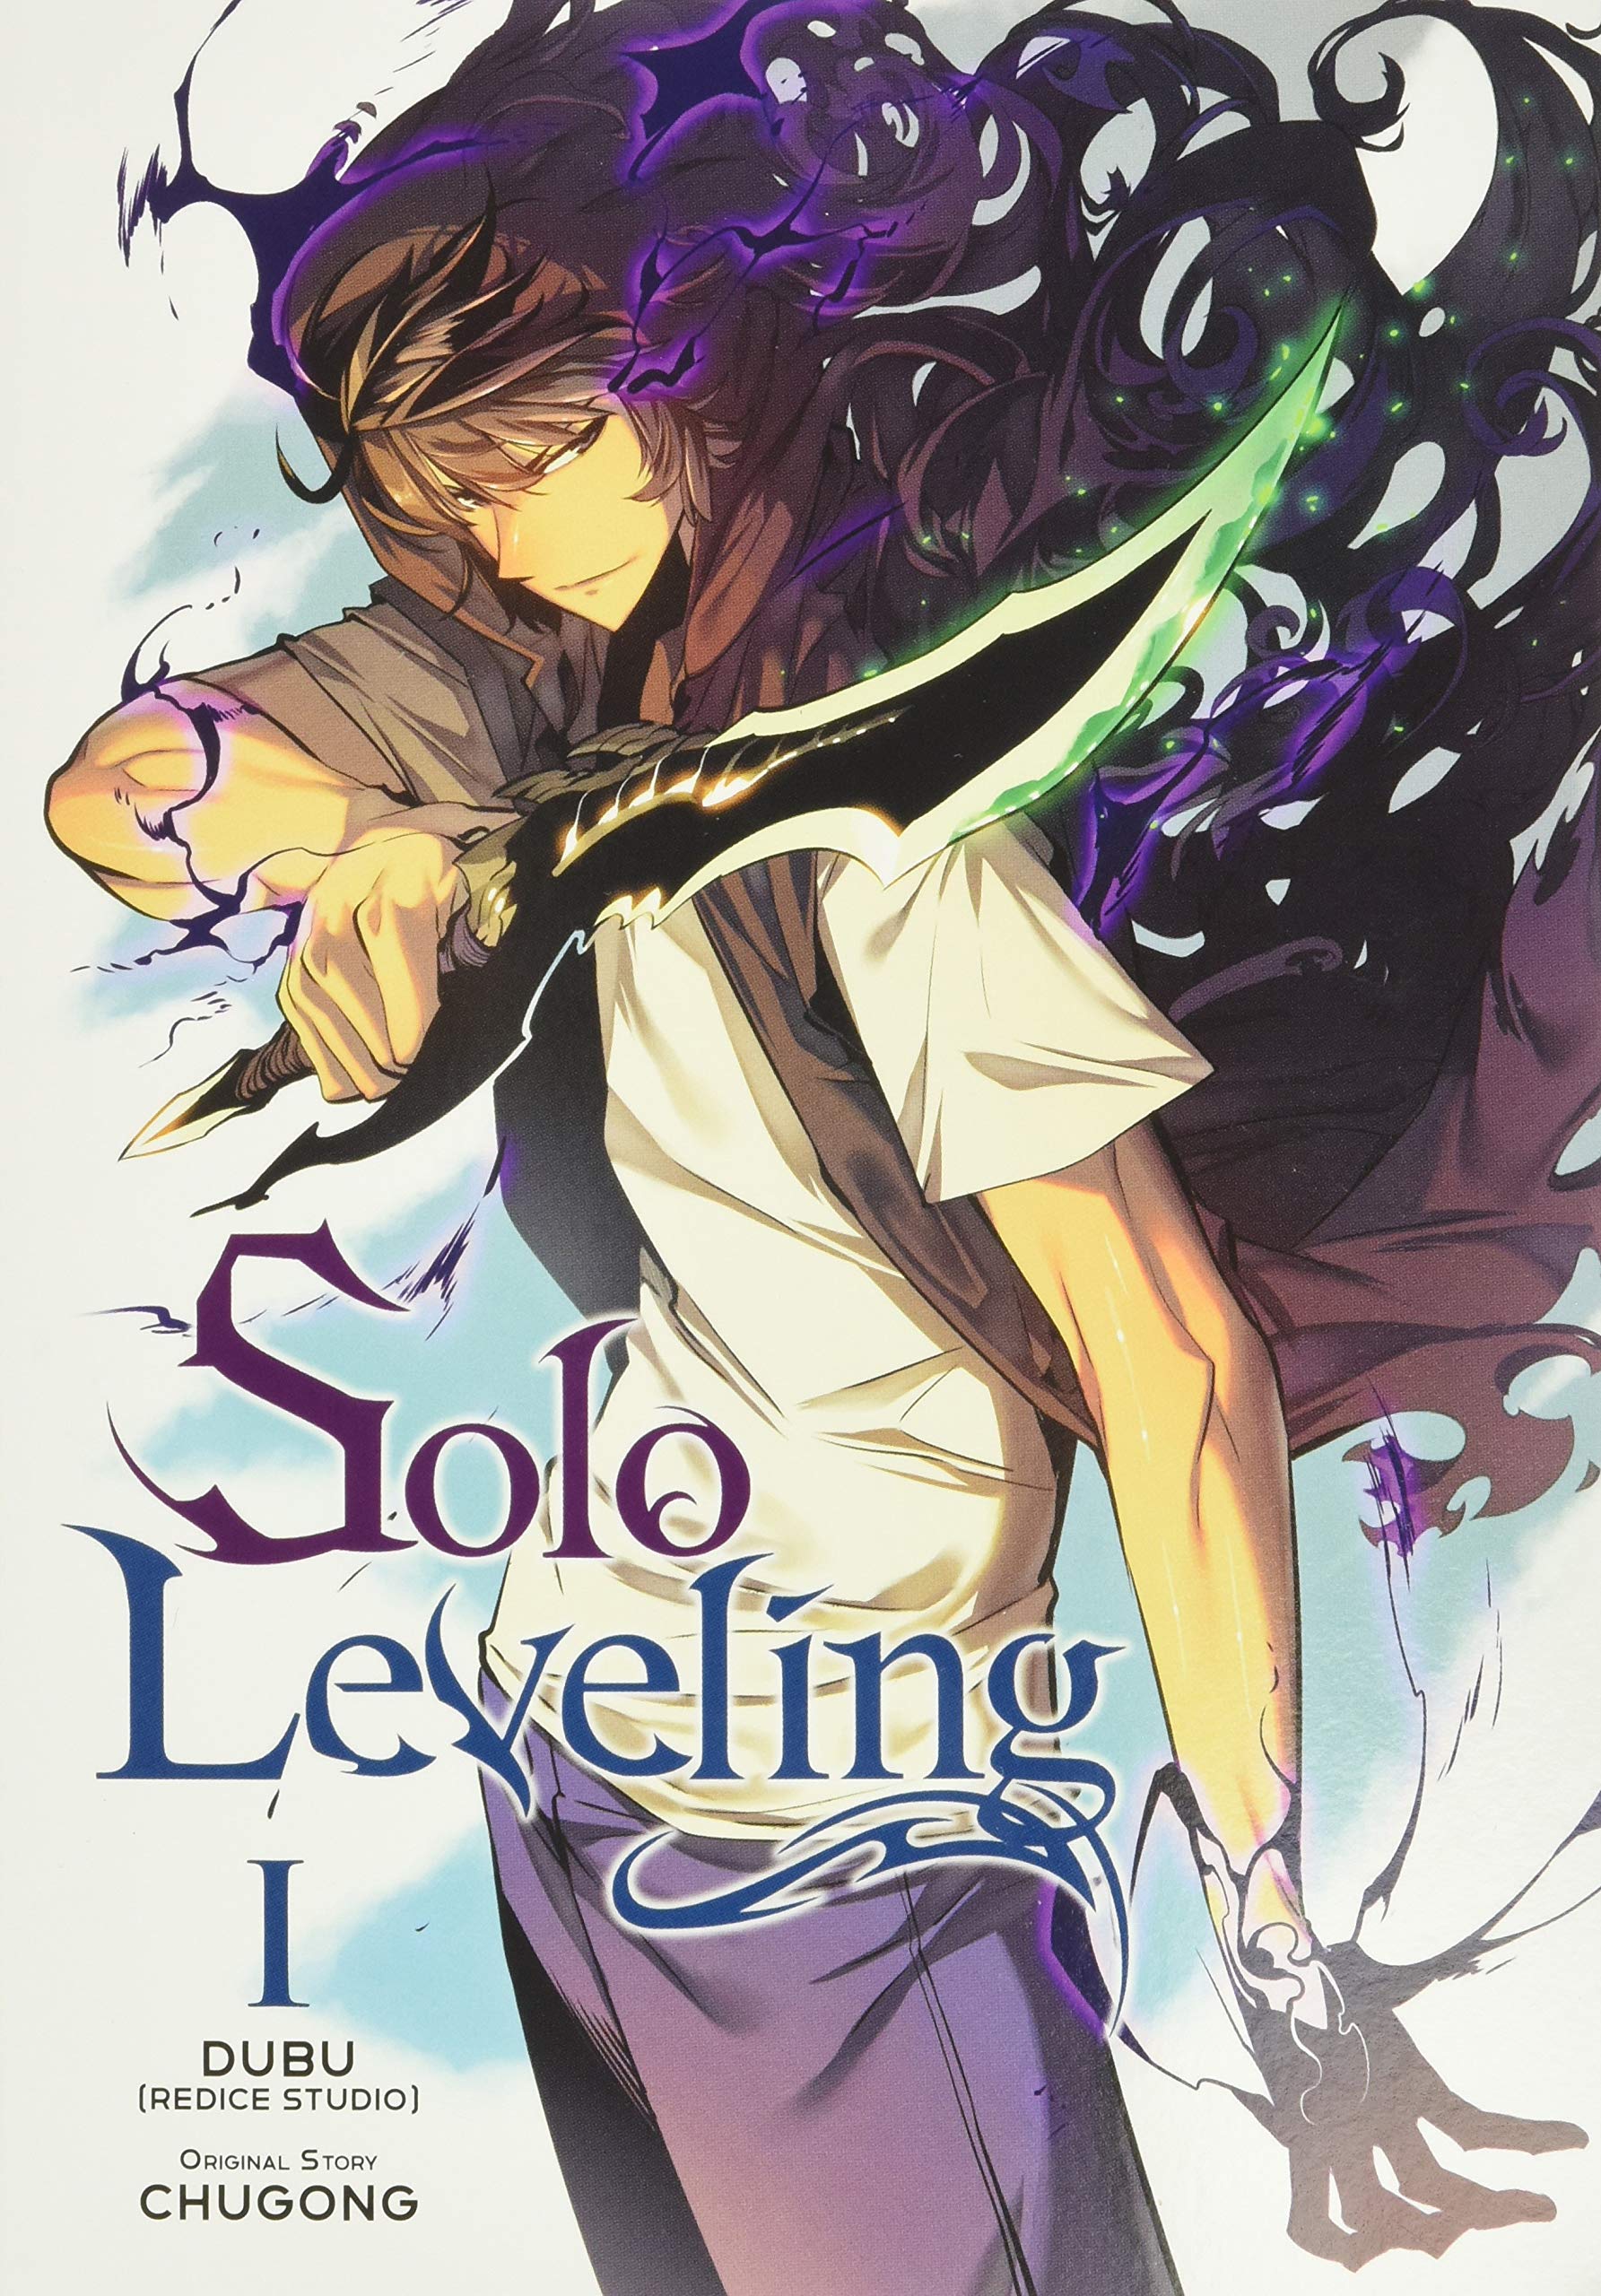 Solo Leveling | Chugong